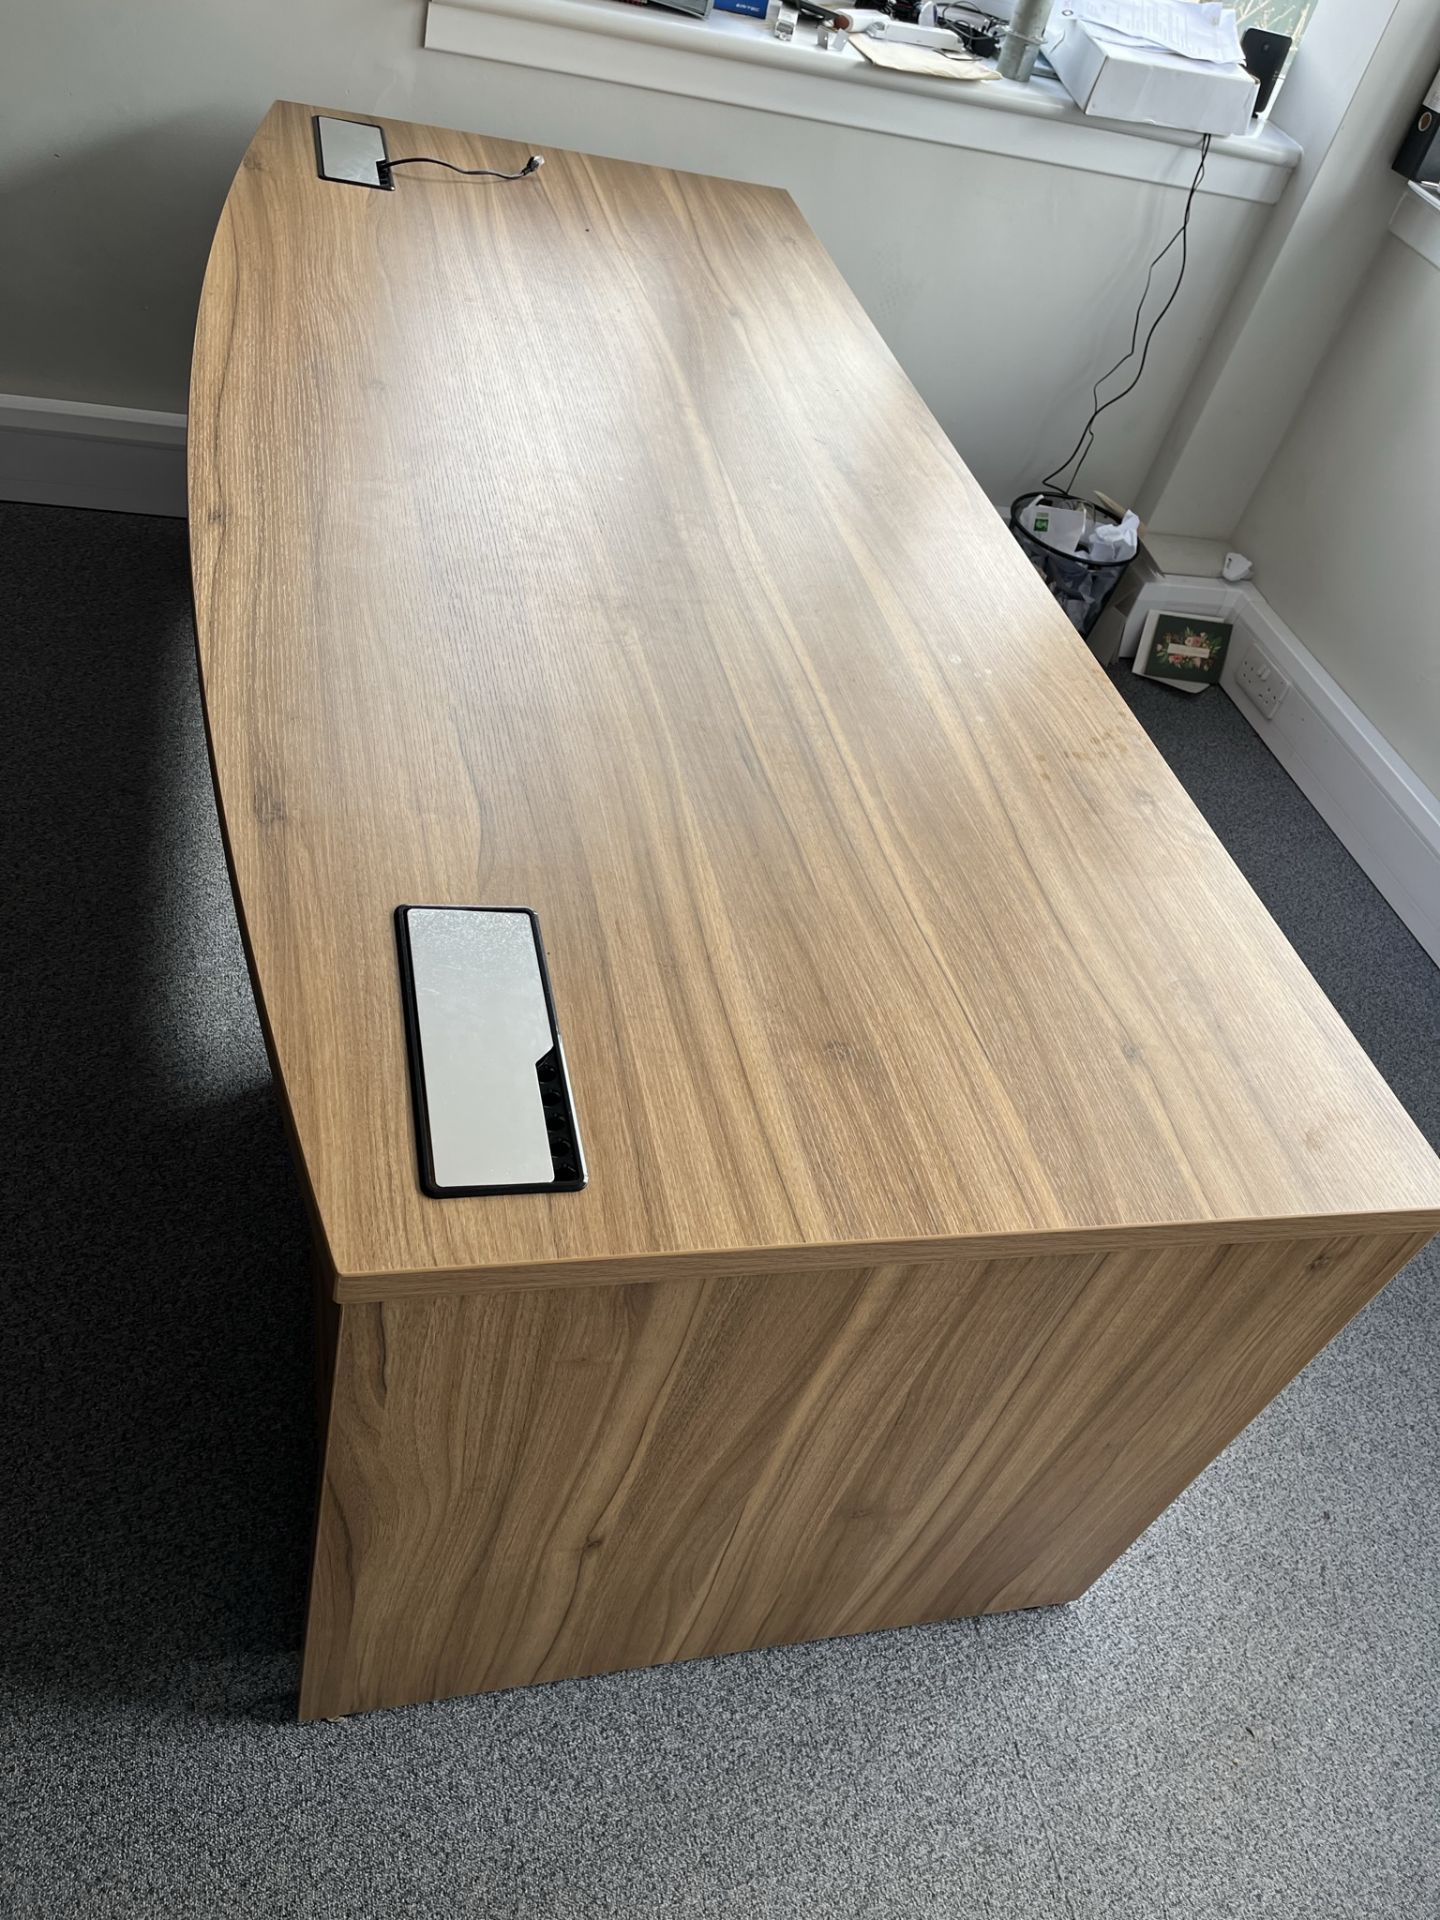 Oak Effect Office Desk w/ Lockable Pedestal - Image 3 of 3